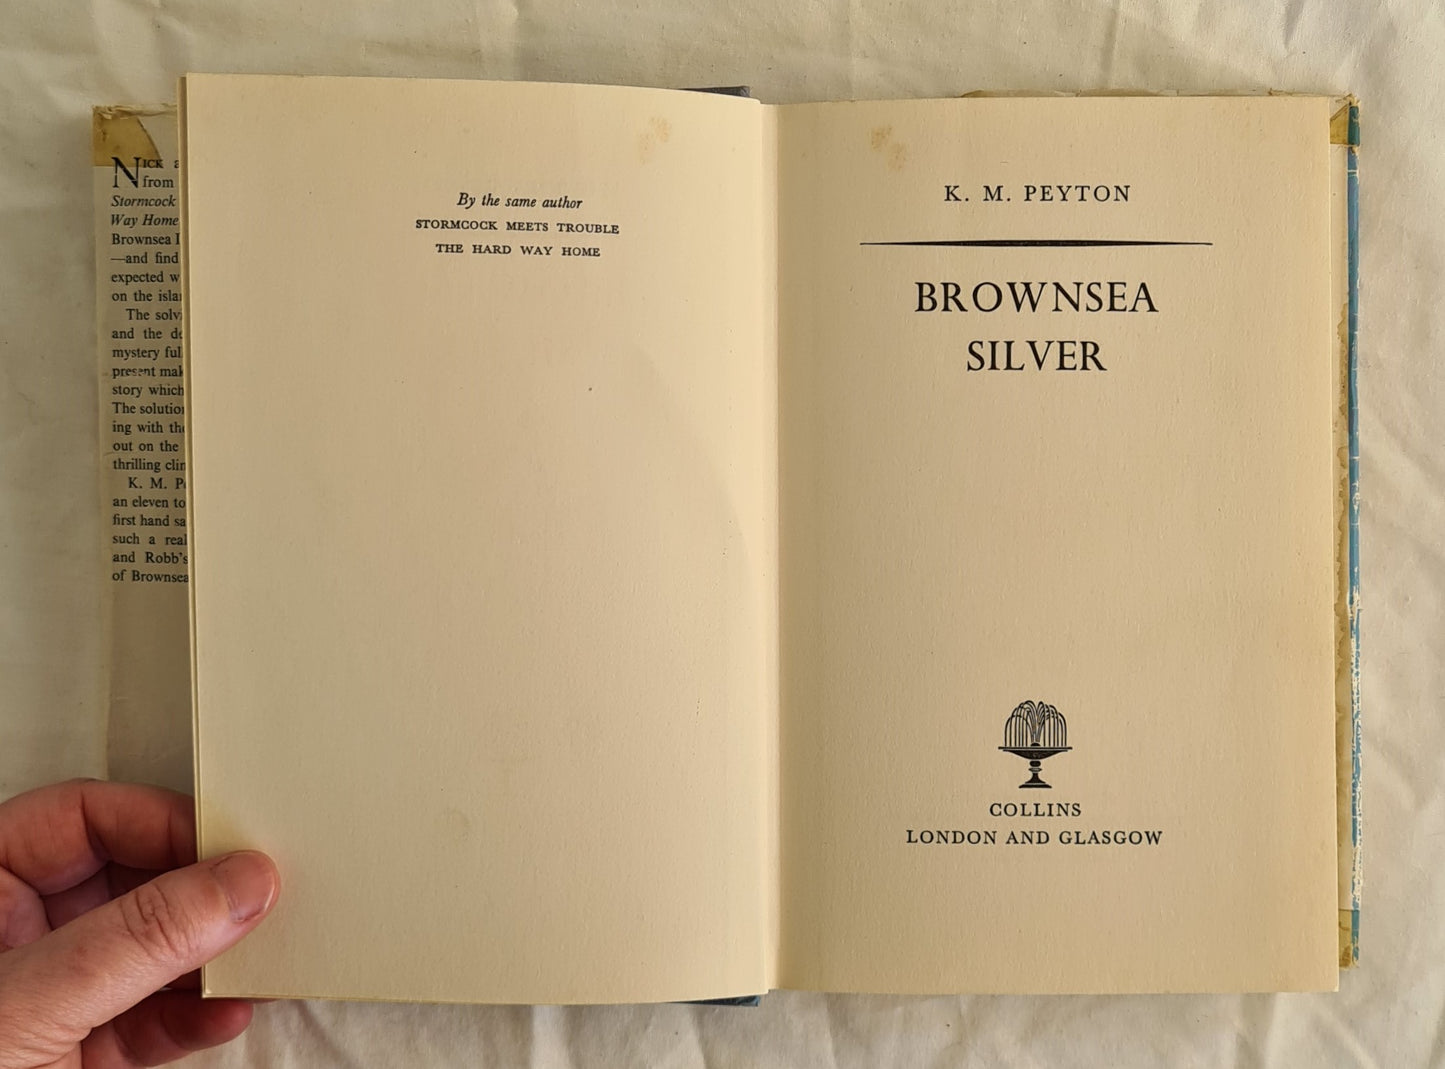 Brownsea Silver by K. M. Peyton